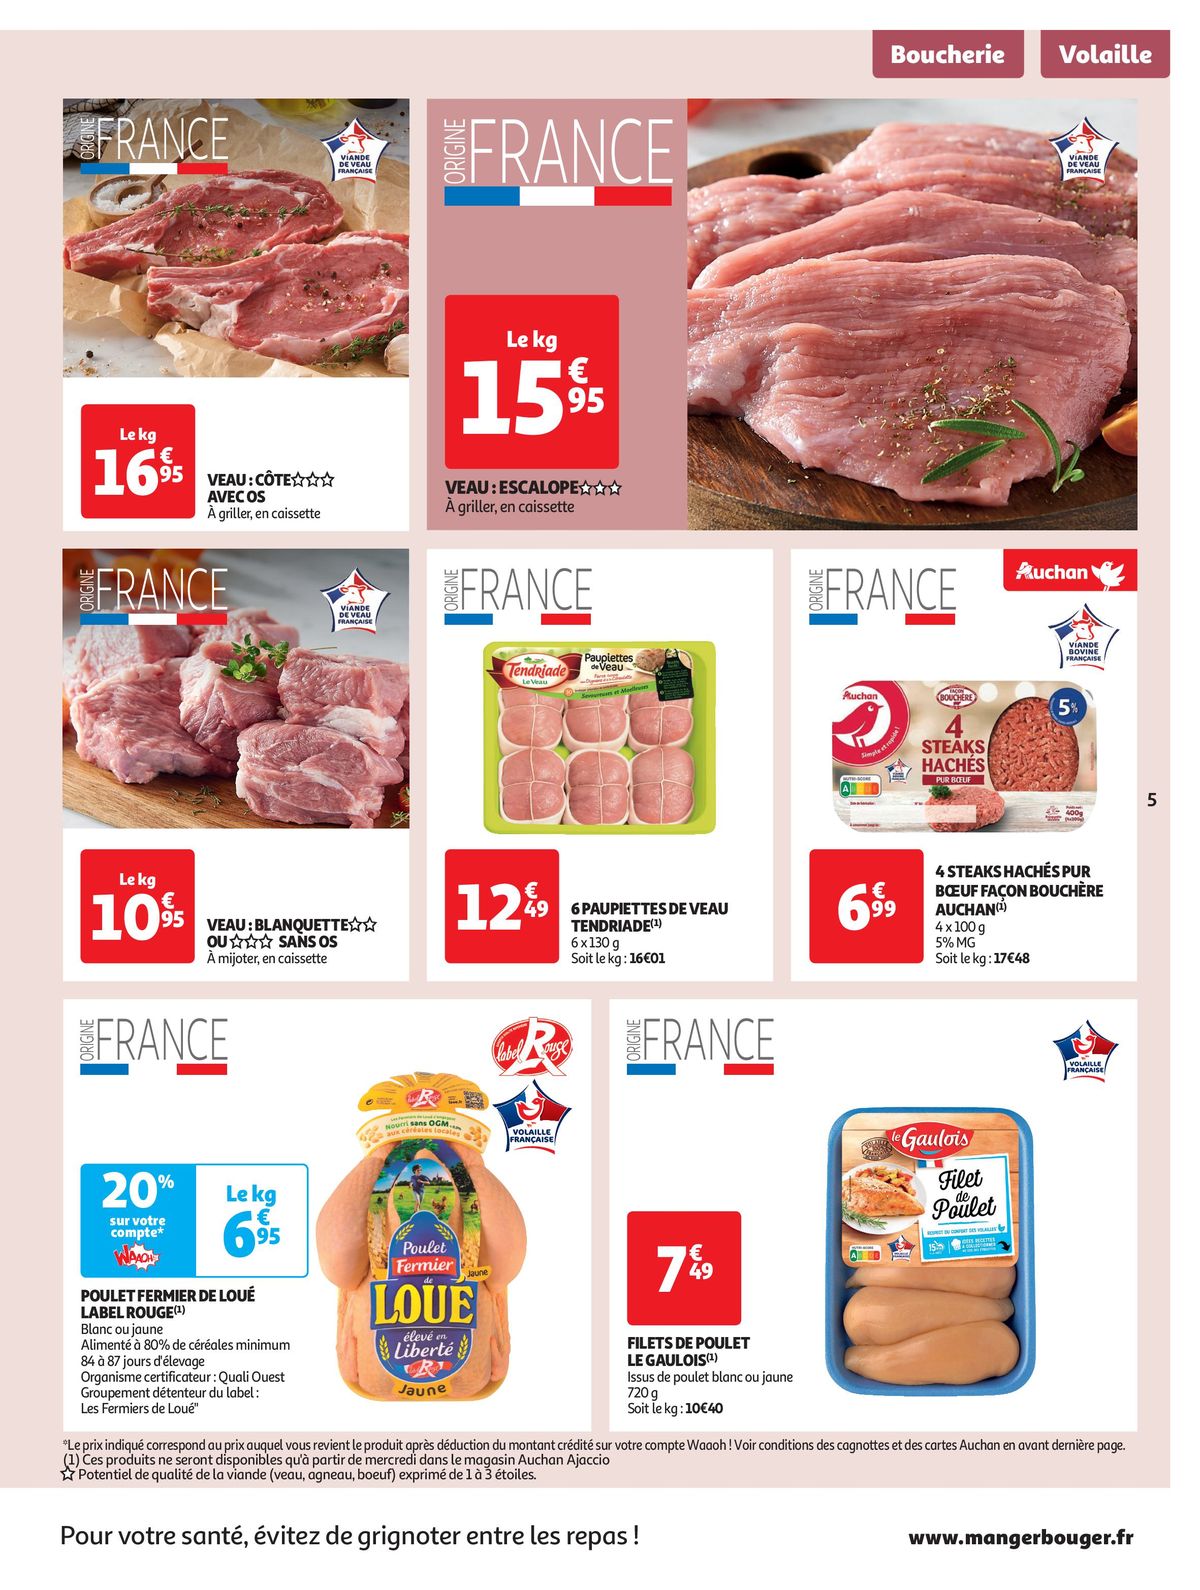 Catalogue Spécial Cuisine Gourmane dans votre supermarché, page 00005